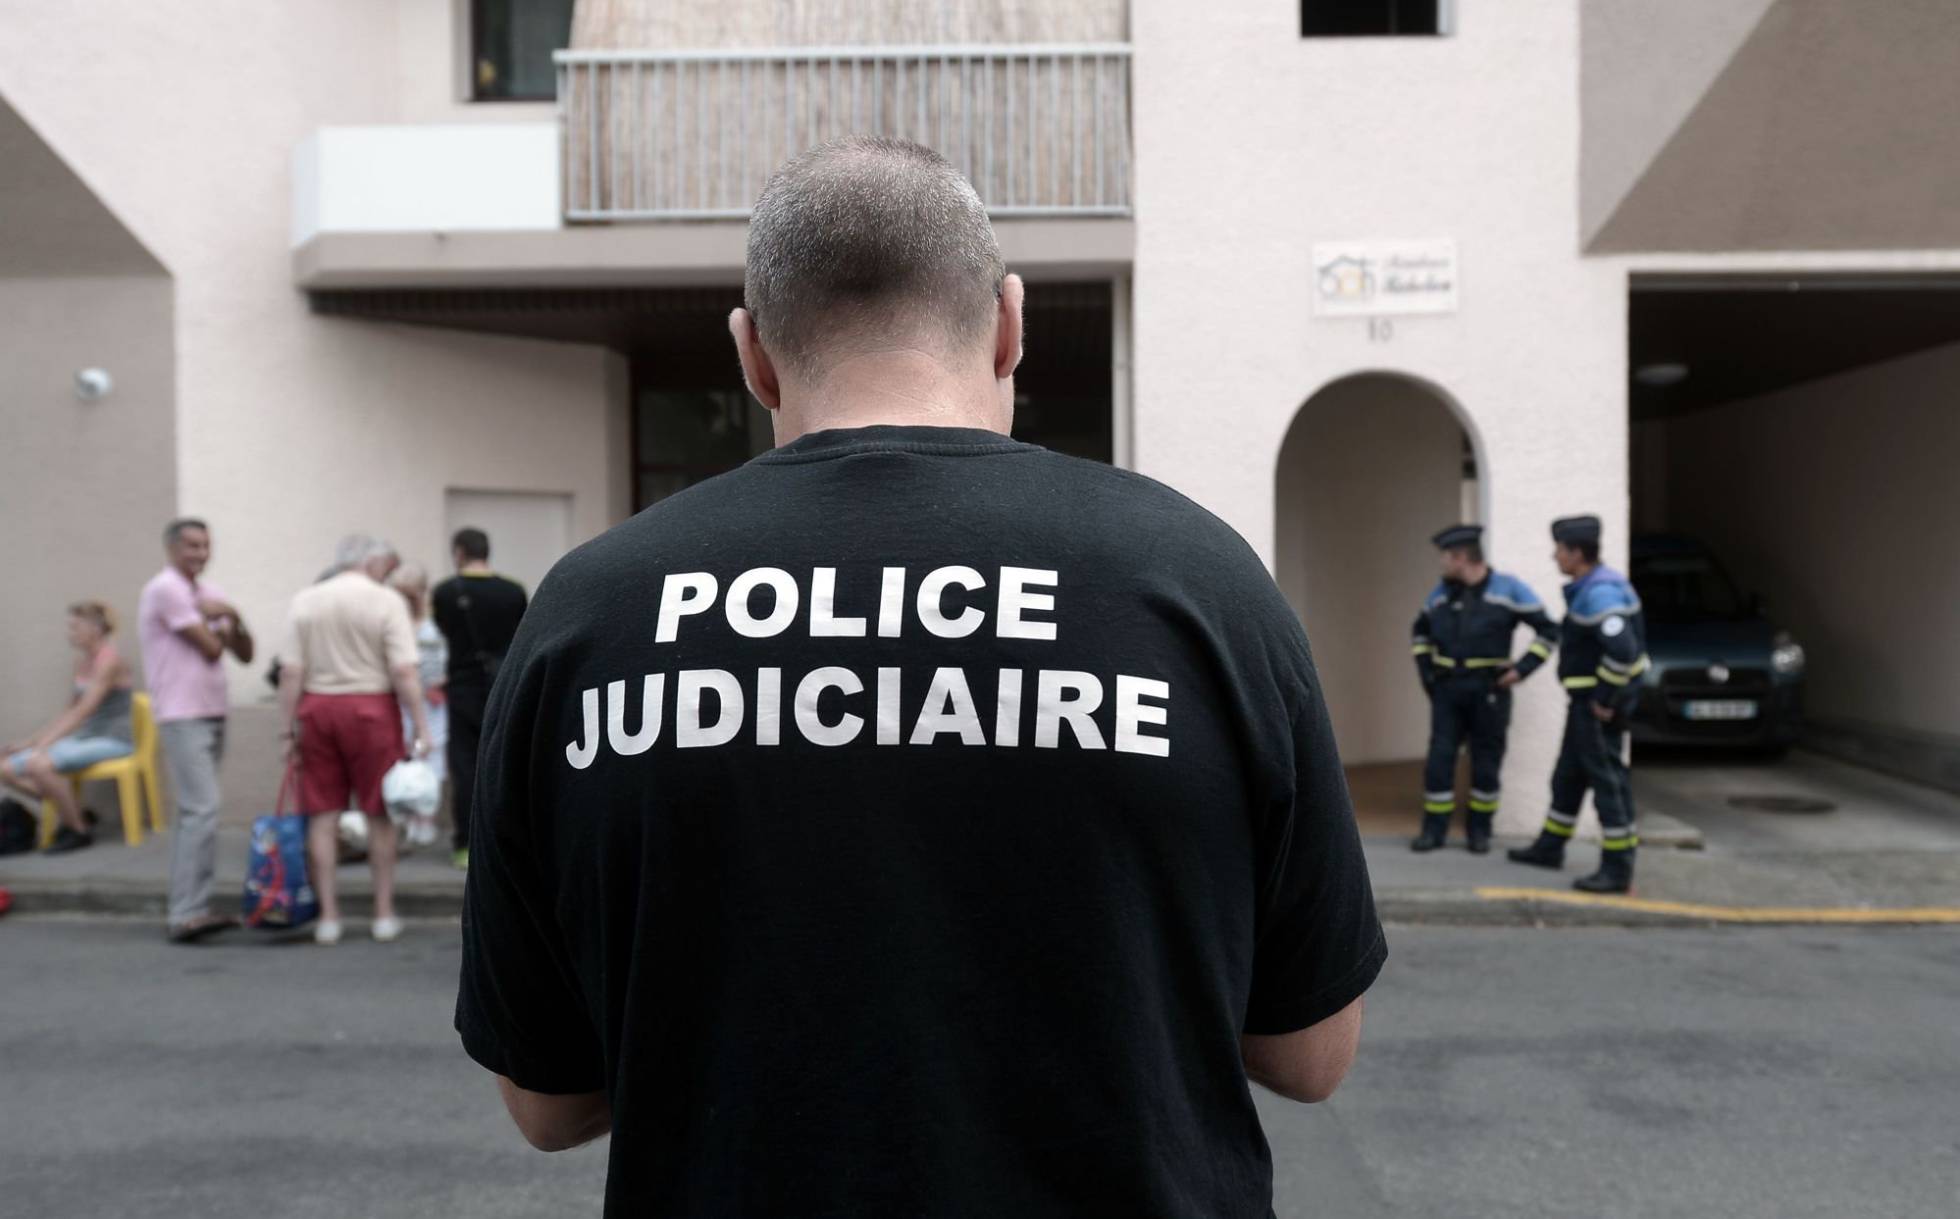 Cinco muertos, entre ellos un niño, en aparente disputa familiar en Francia